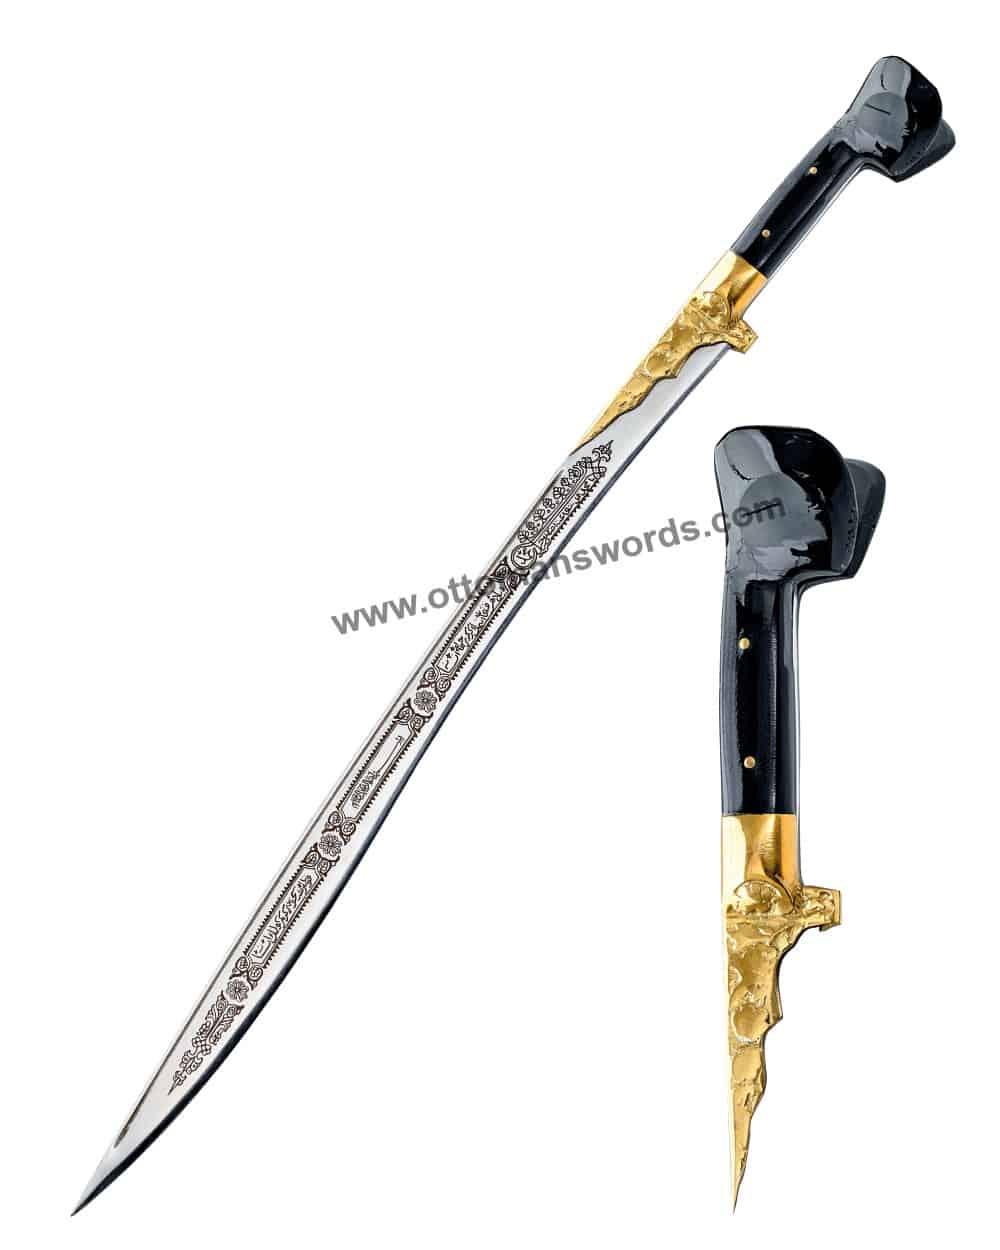 yatagan sword 60 cm